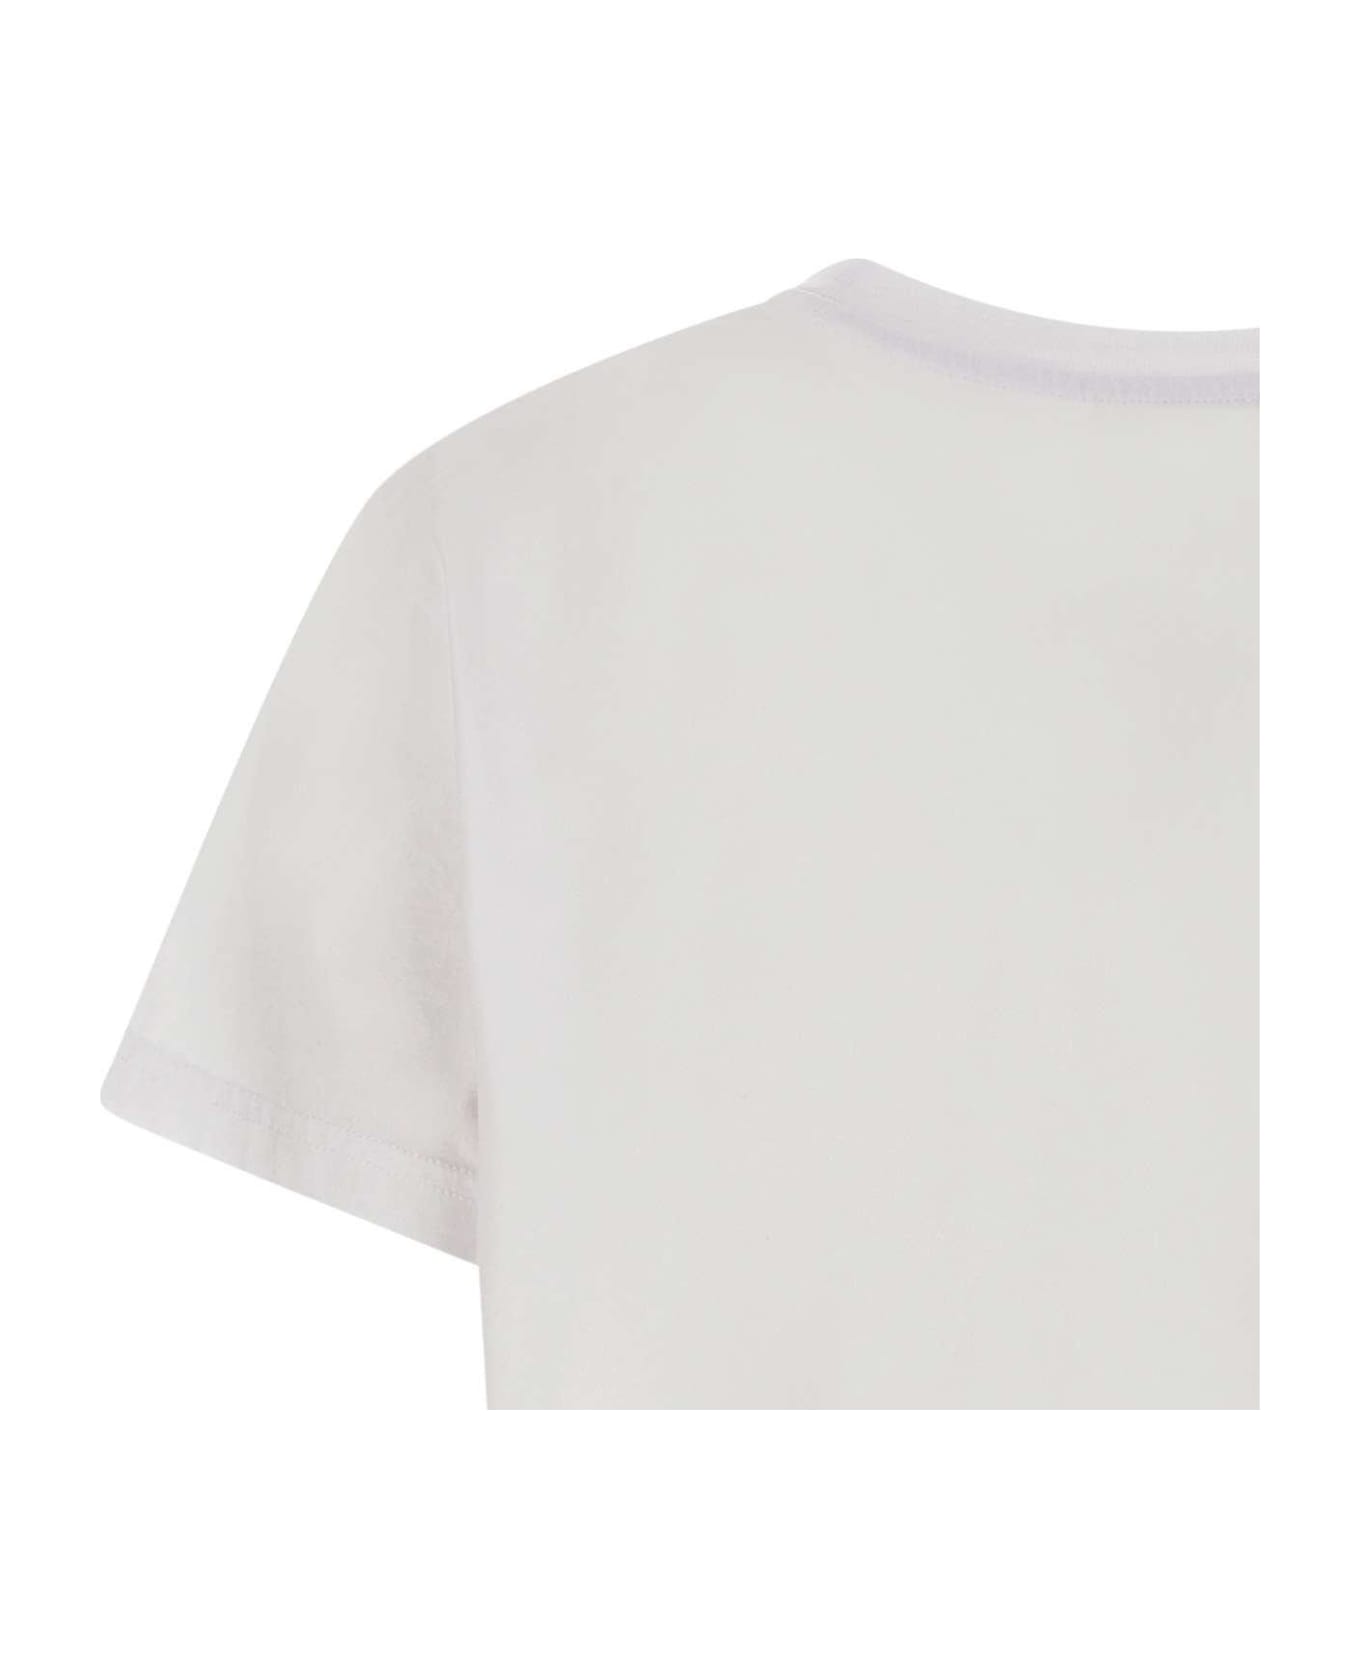 Woolrich Crewneck Short-sleeved T-shirt Tシャツ